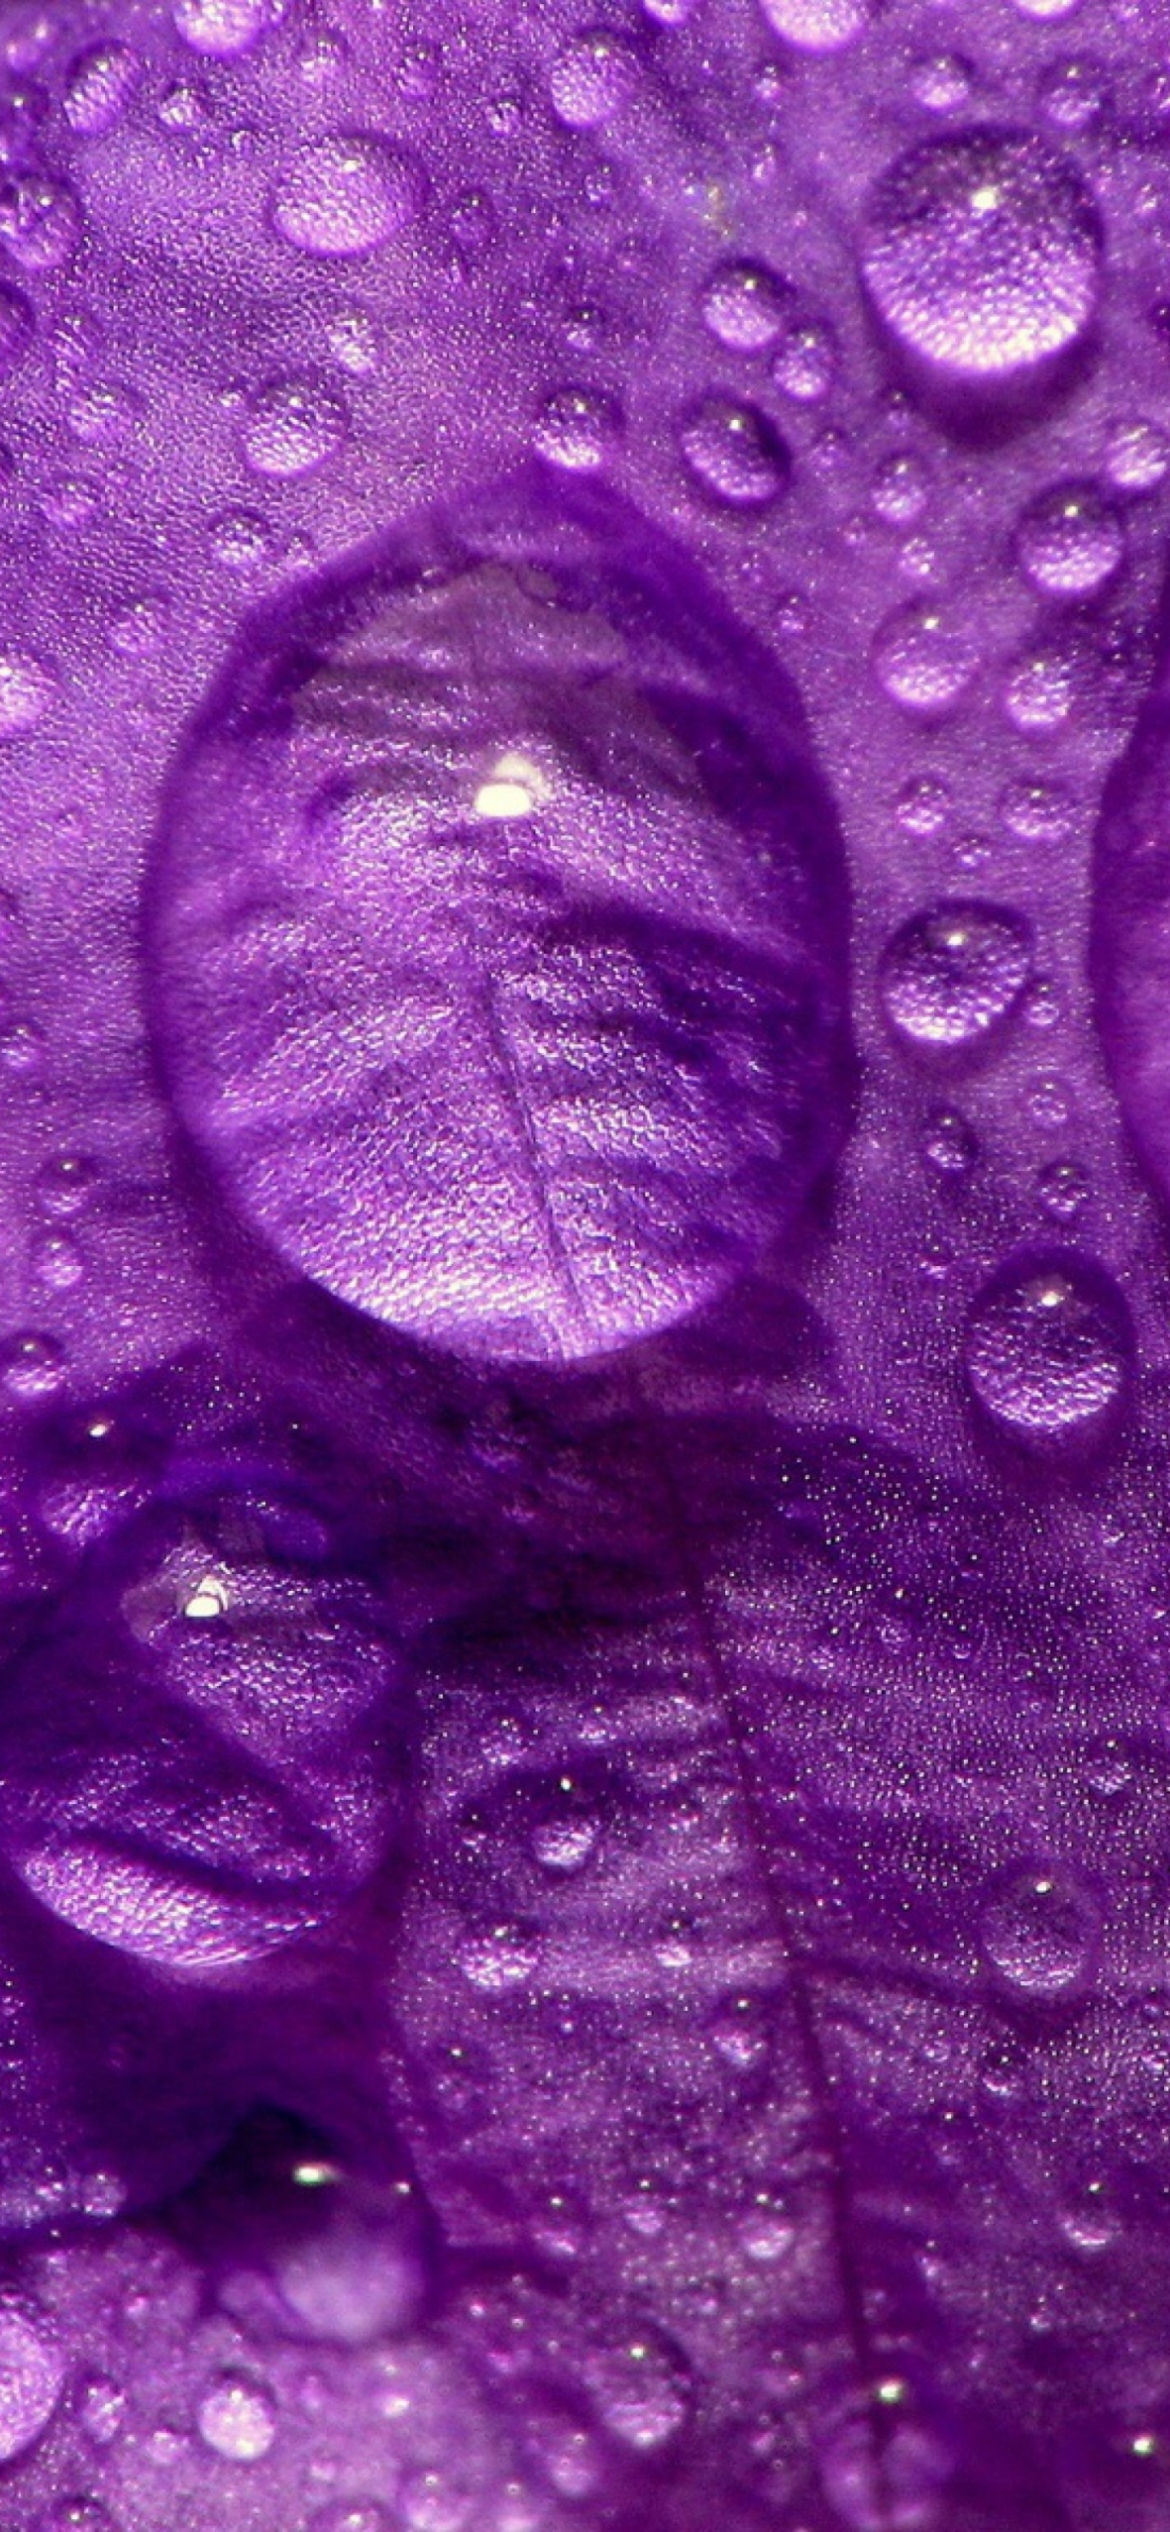 Dew Drops On Violet Petals wallpaper 1170x2532